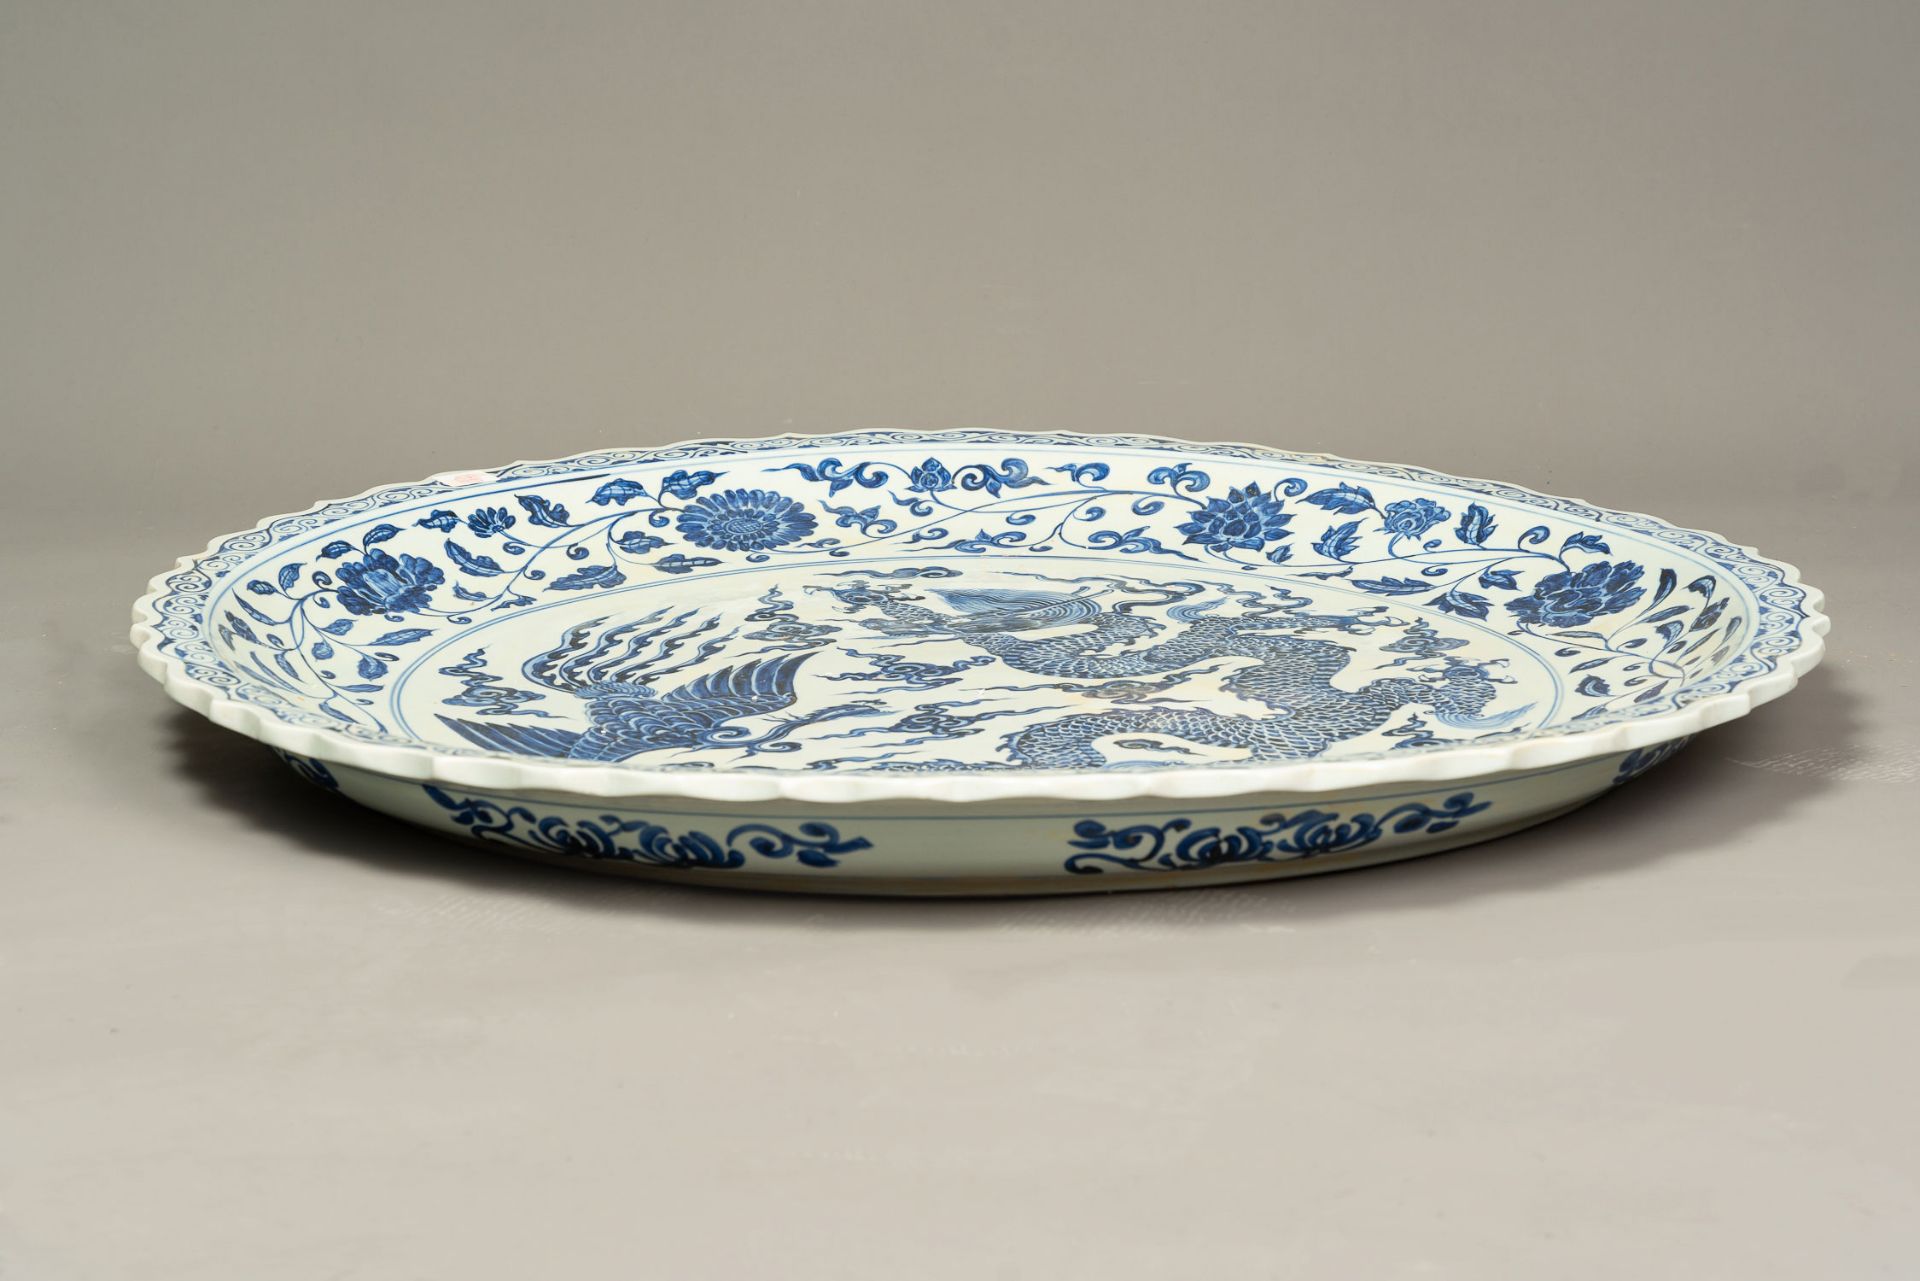 Extra Large Chinese Porcelain Bowl - Image 3 of 3